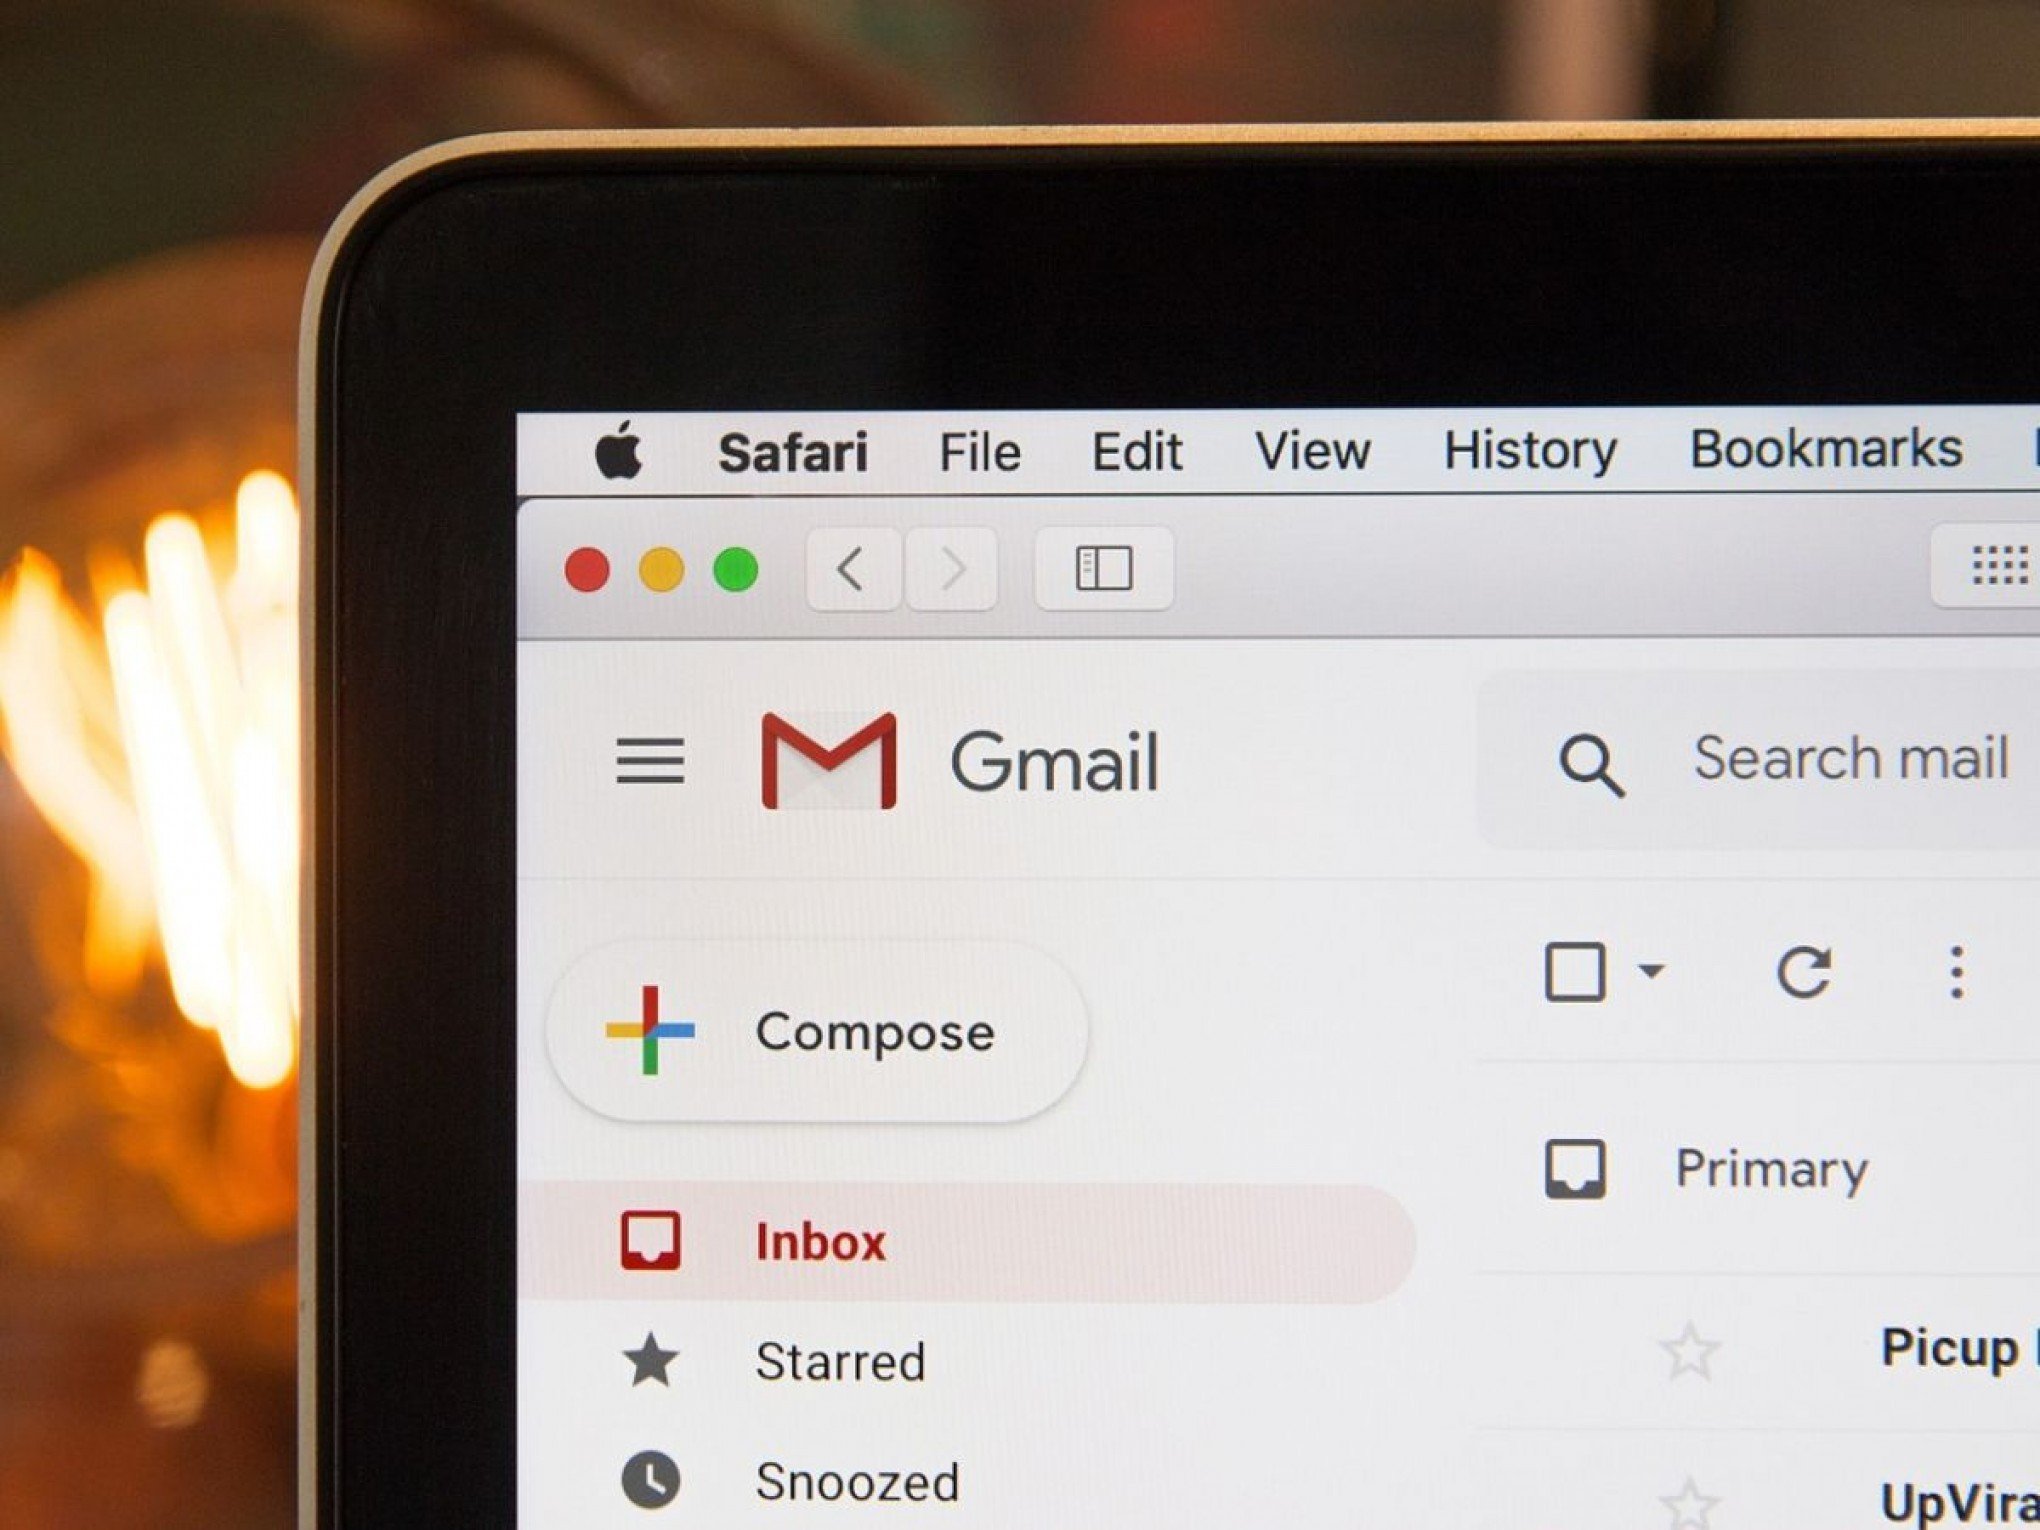 Gmail lotado? Veja como liberar espaço no Google sem sofrer